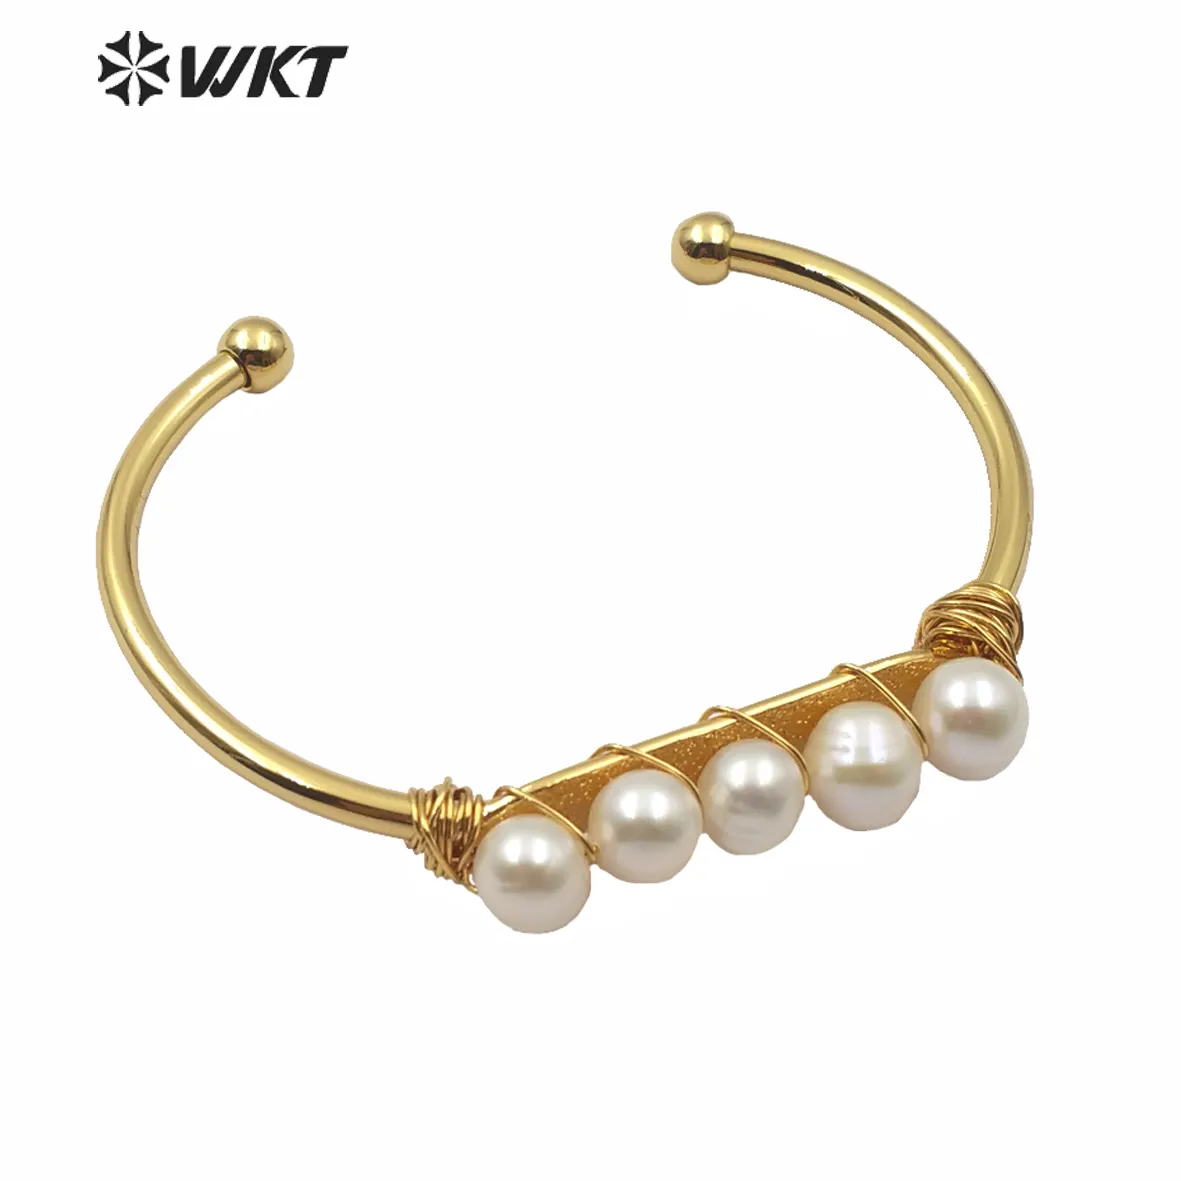 WT-B486 Nuova signora di disegno dei monili di fascino della perla del braccialetto del filo di perle avvolto placcato oro del braccialetto dei monili di modo per le donne